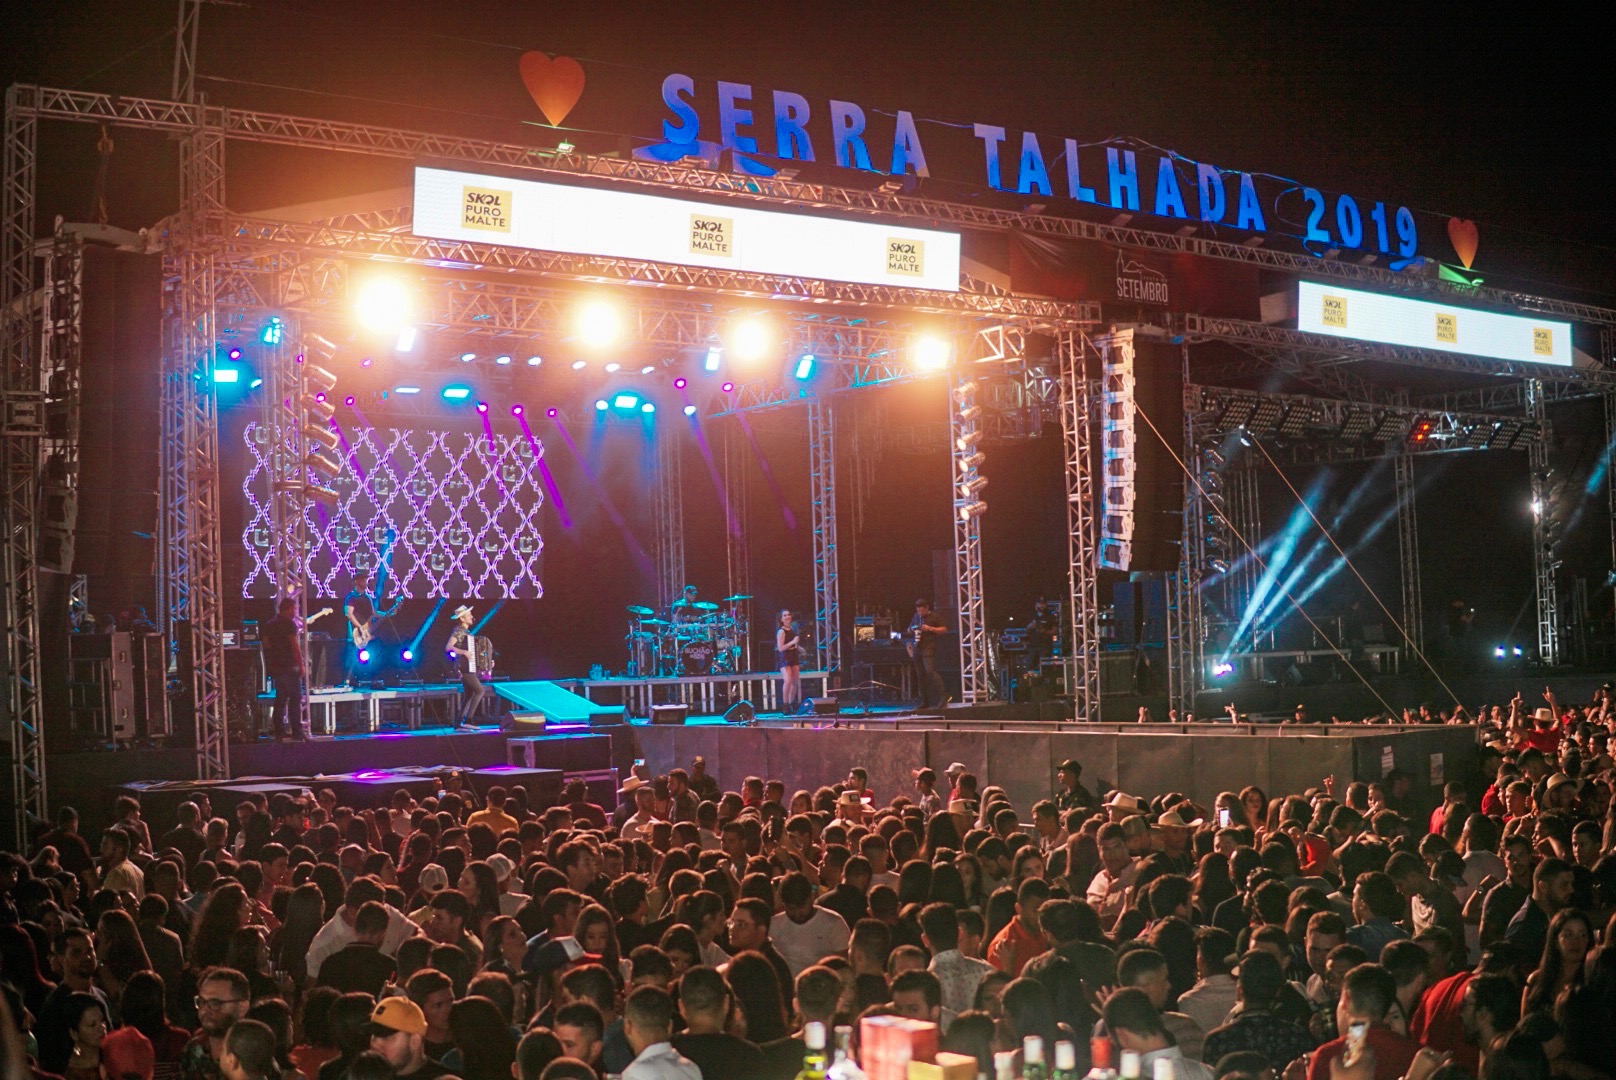 Noite de muitos encontros na festa de Serra Talhada